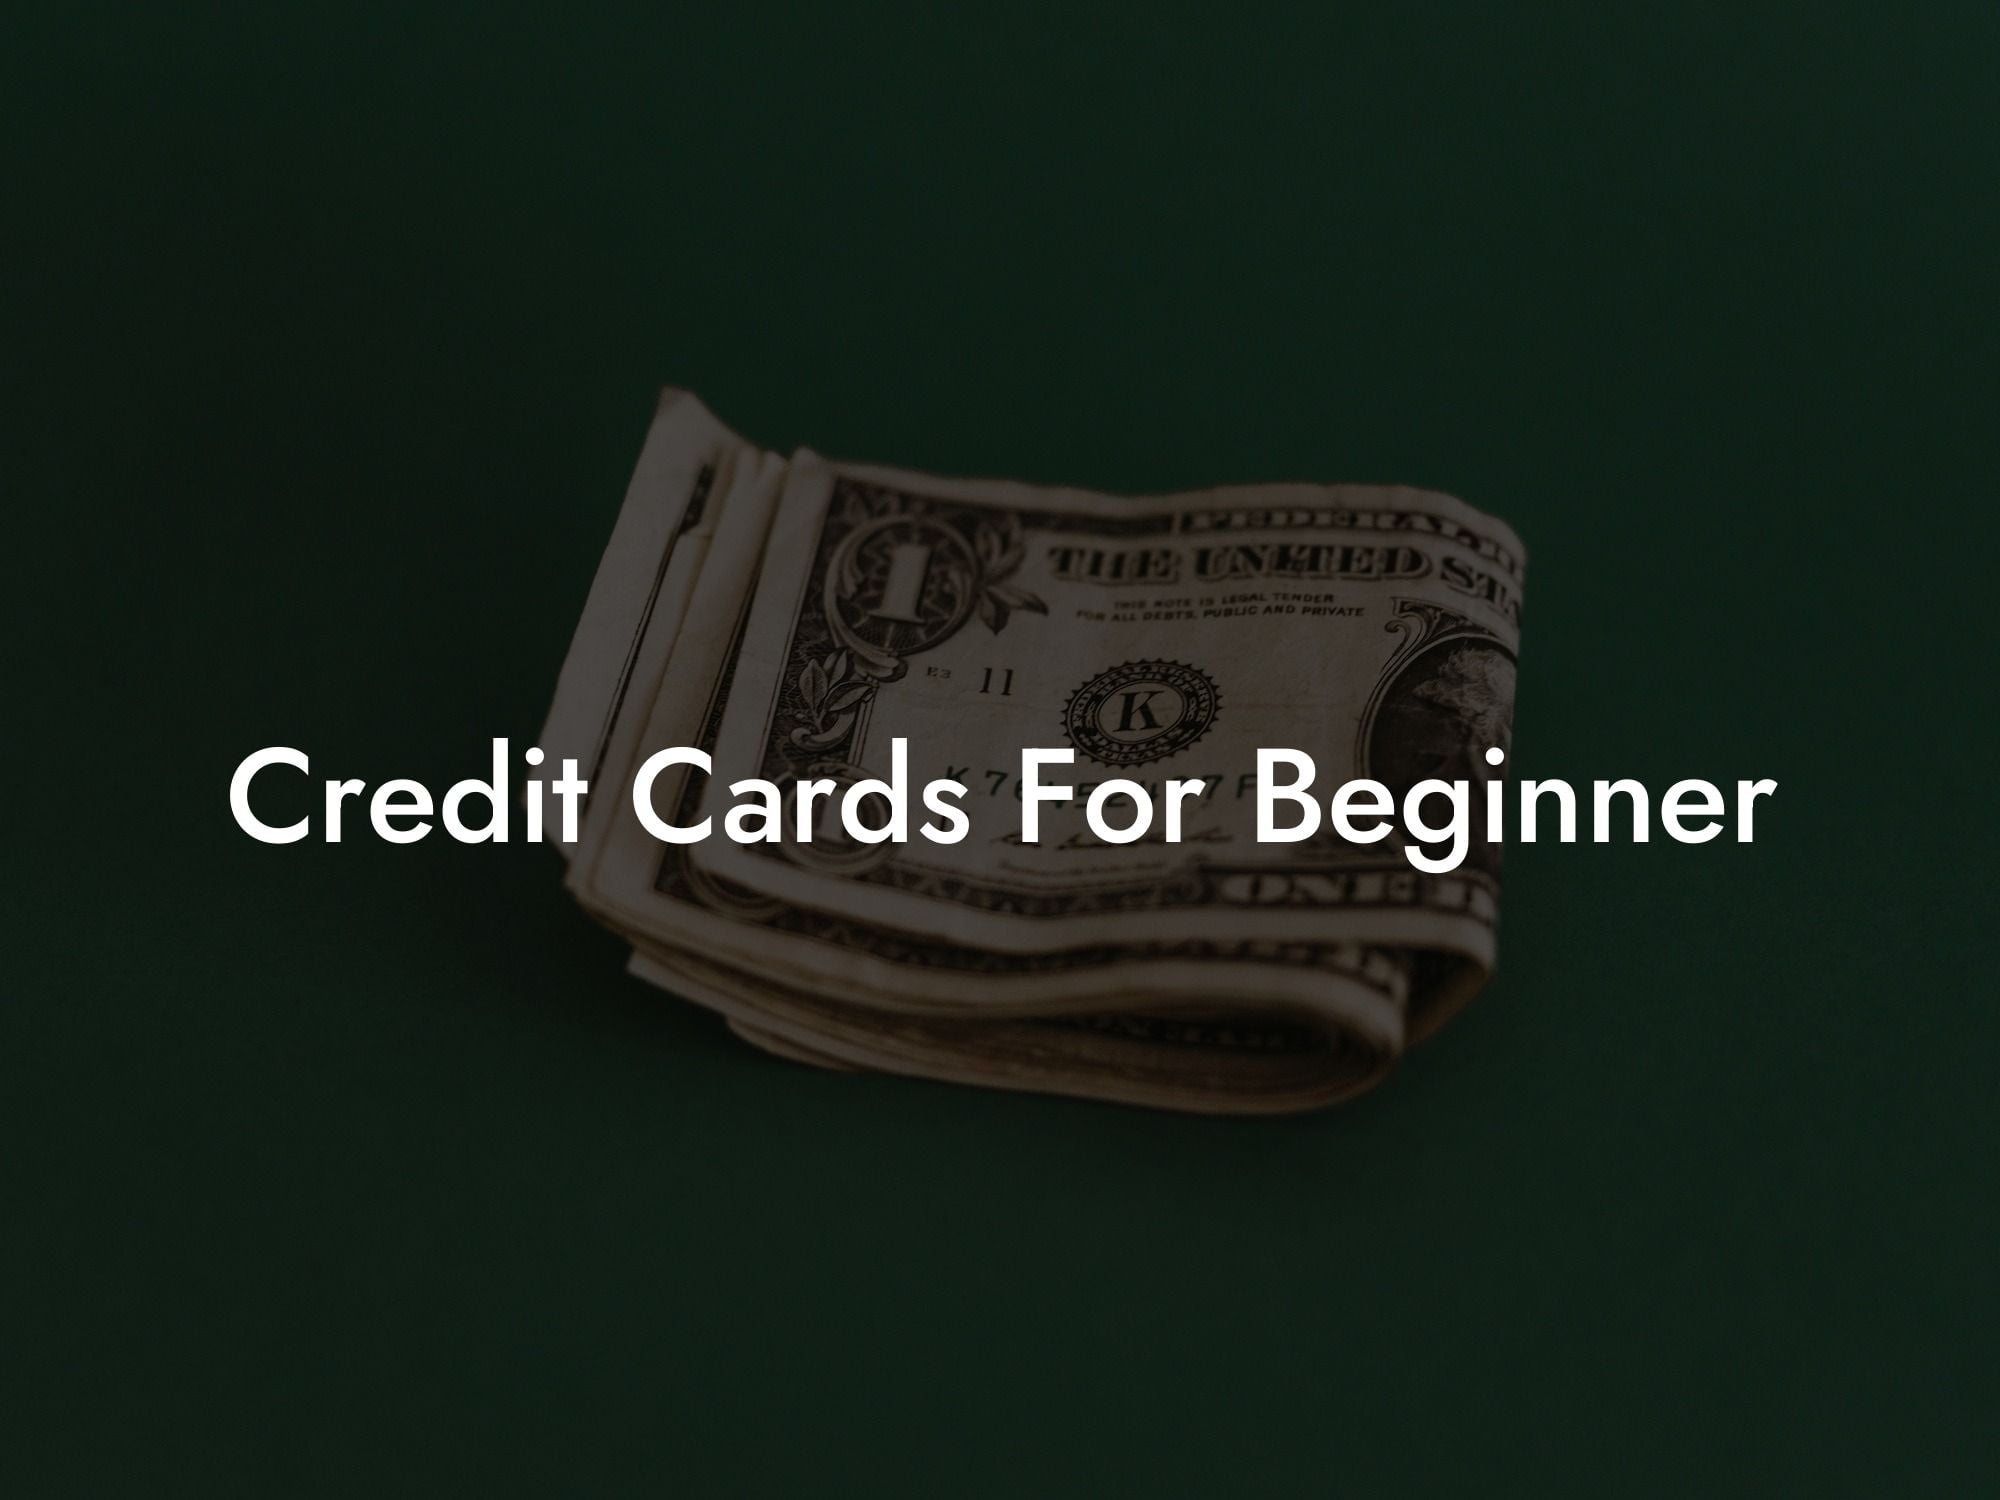 Credit Cards For Beginner